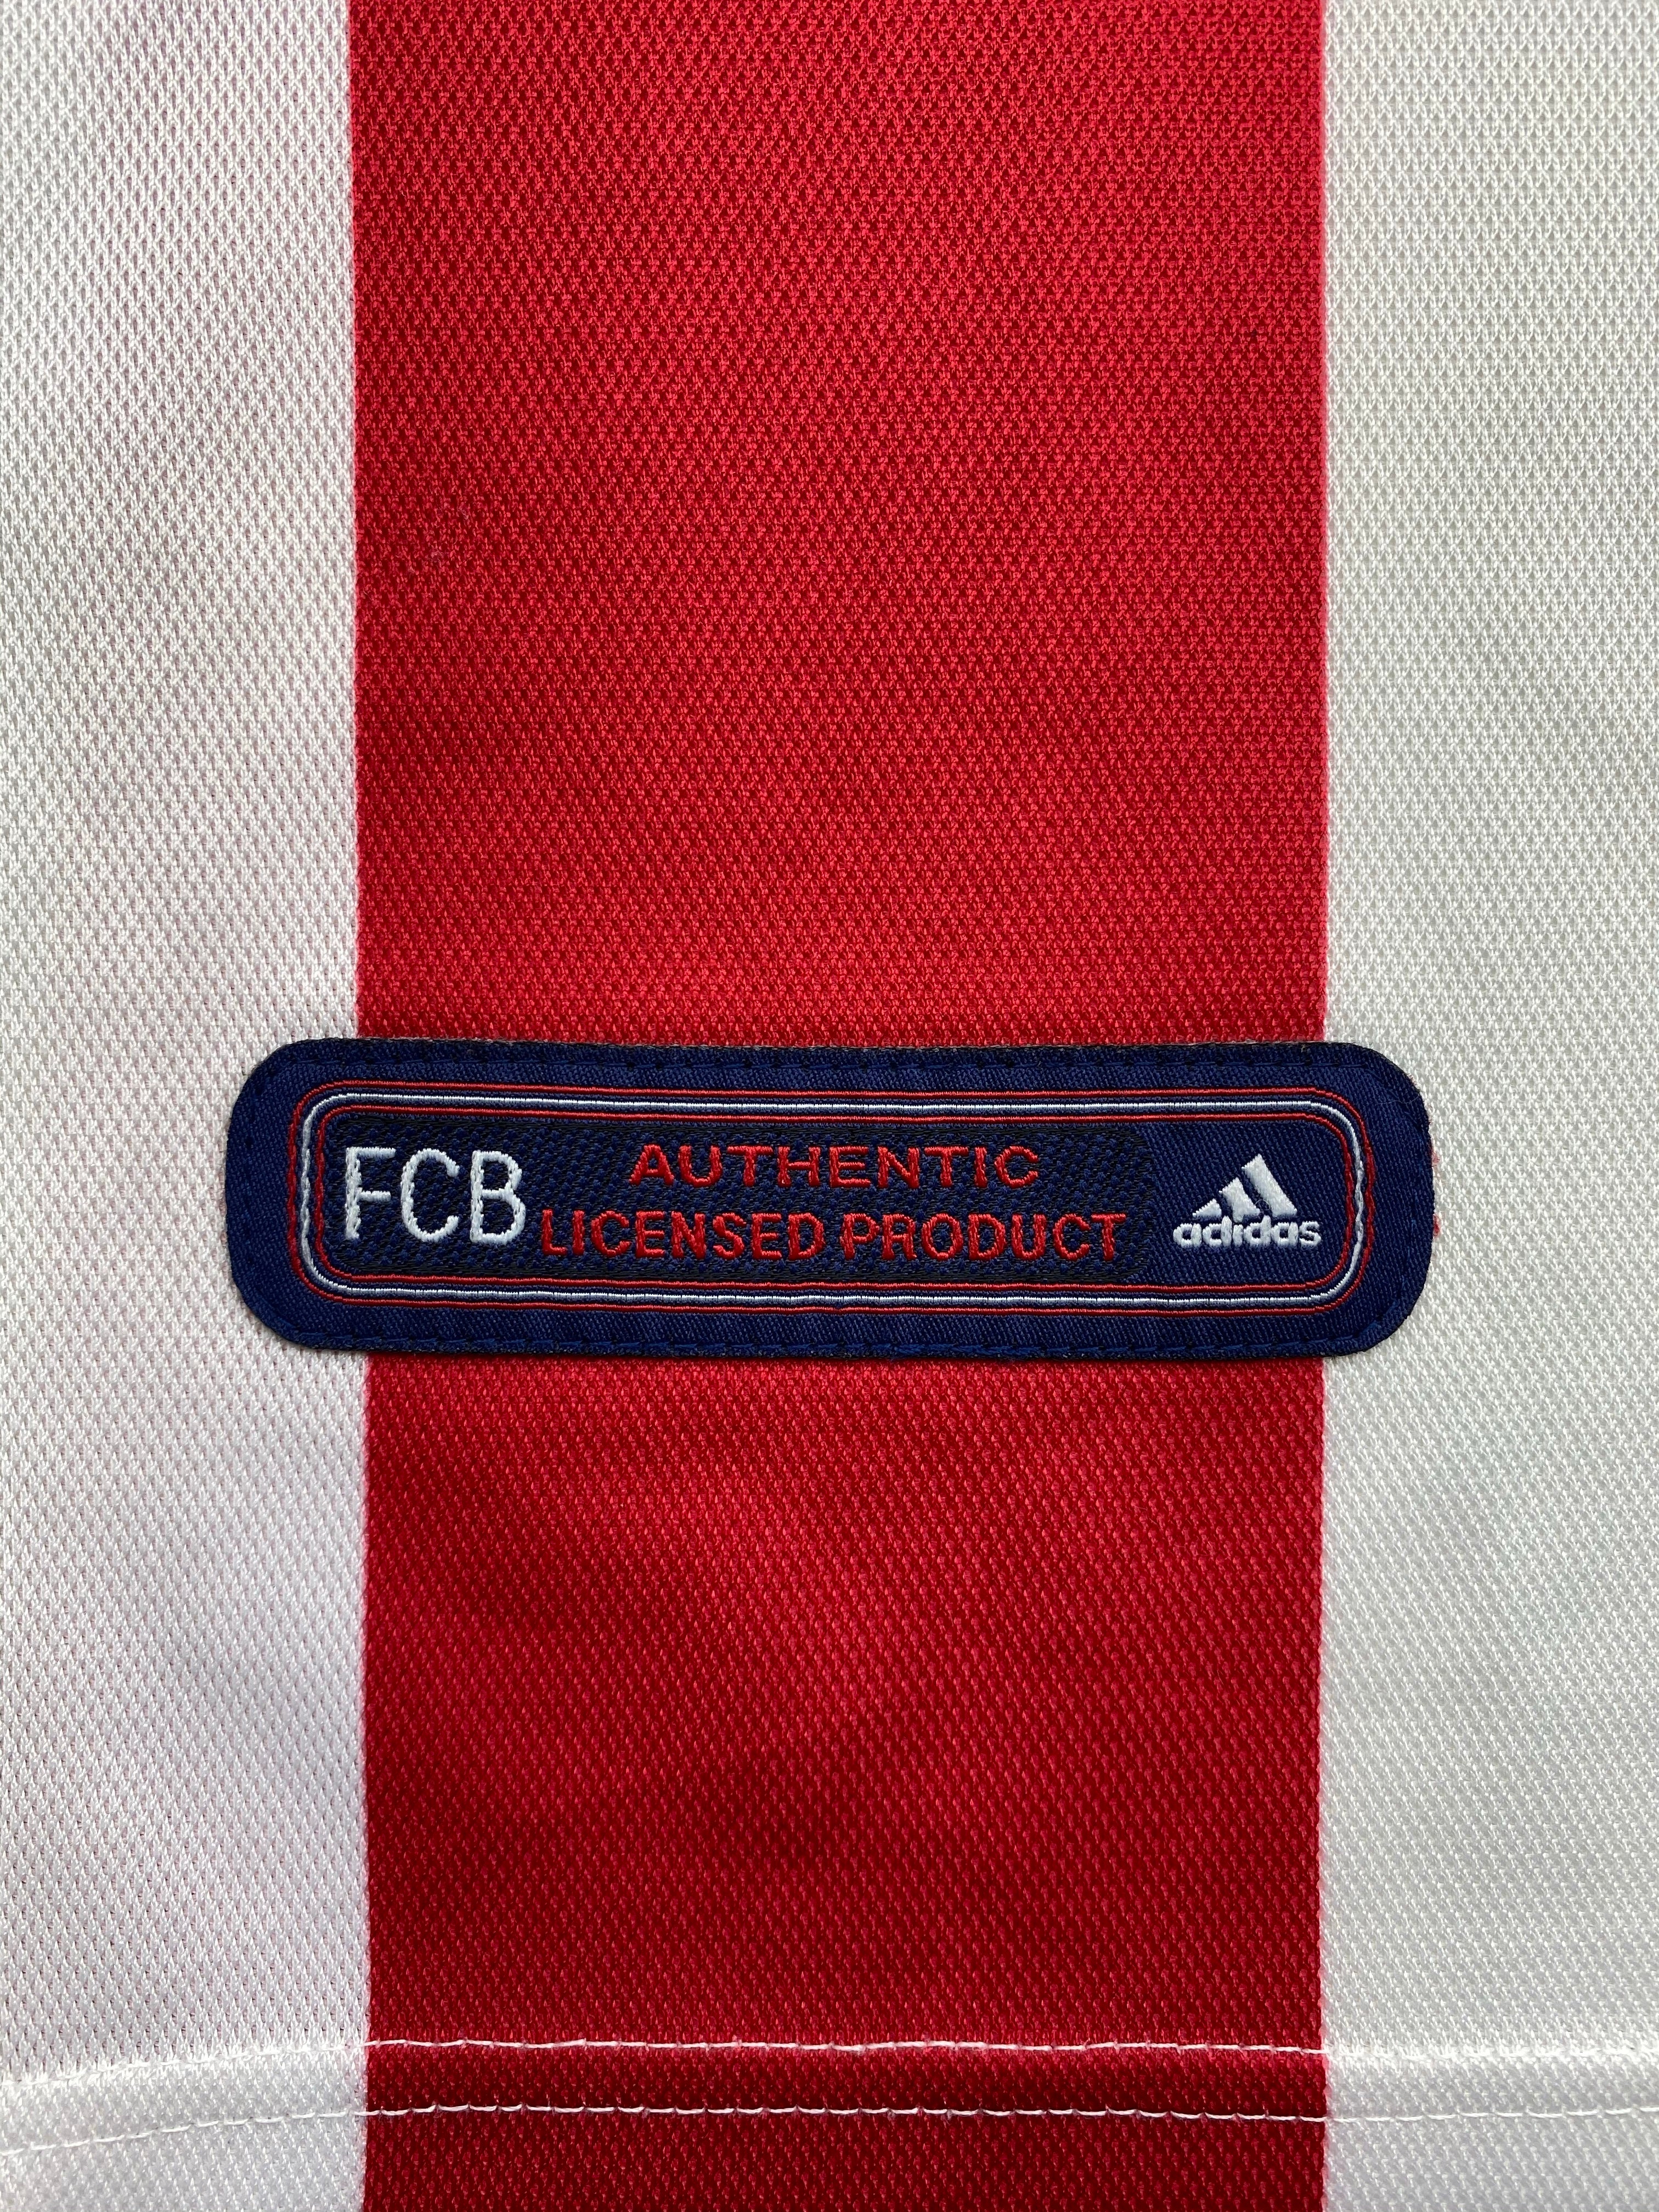 2000/01 Camiseta visitante del Bayern de Múnich (S) 9/10